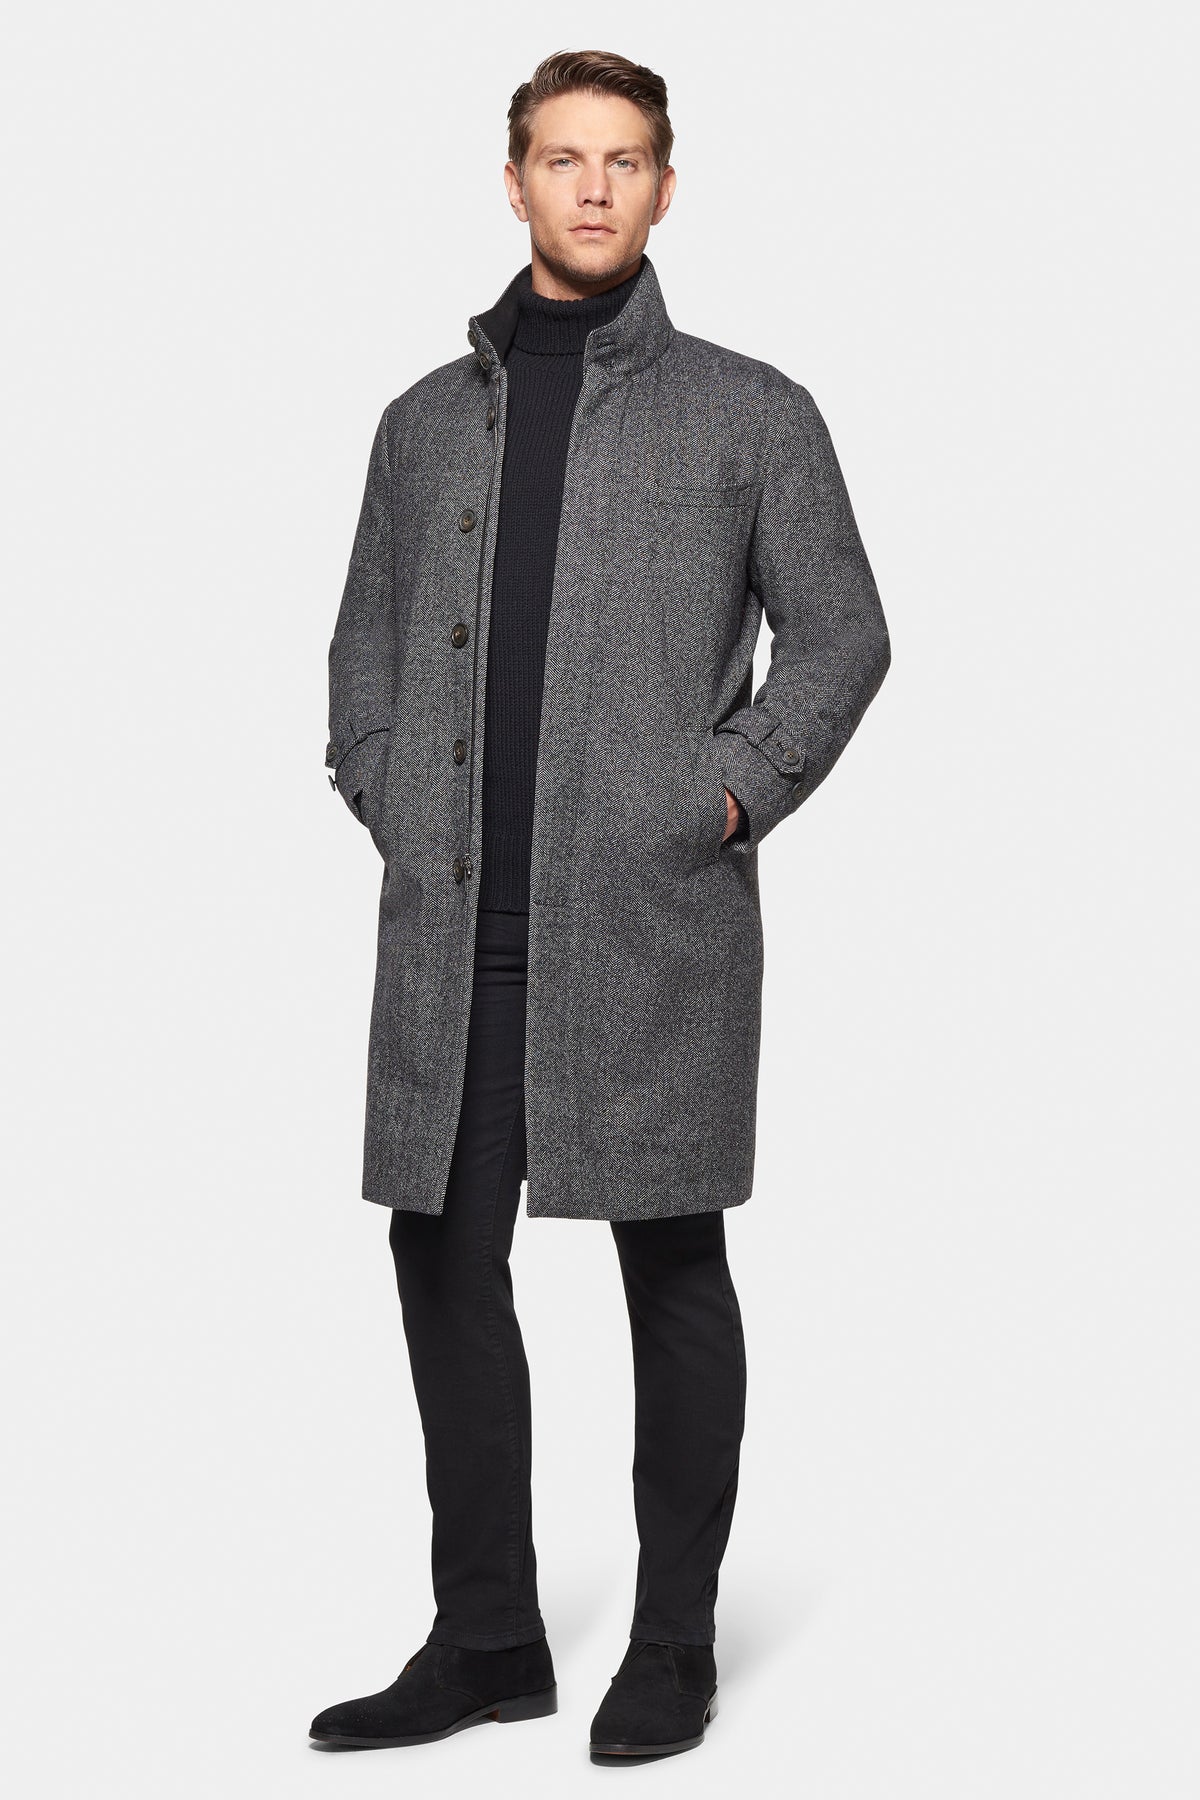 Cashmere Wool Topcoat Grey Black Herringbone